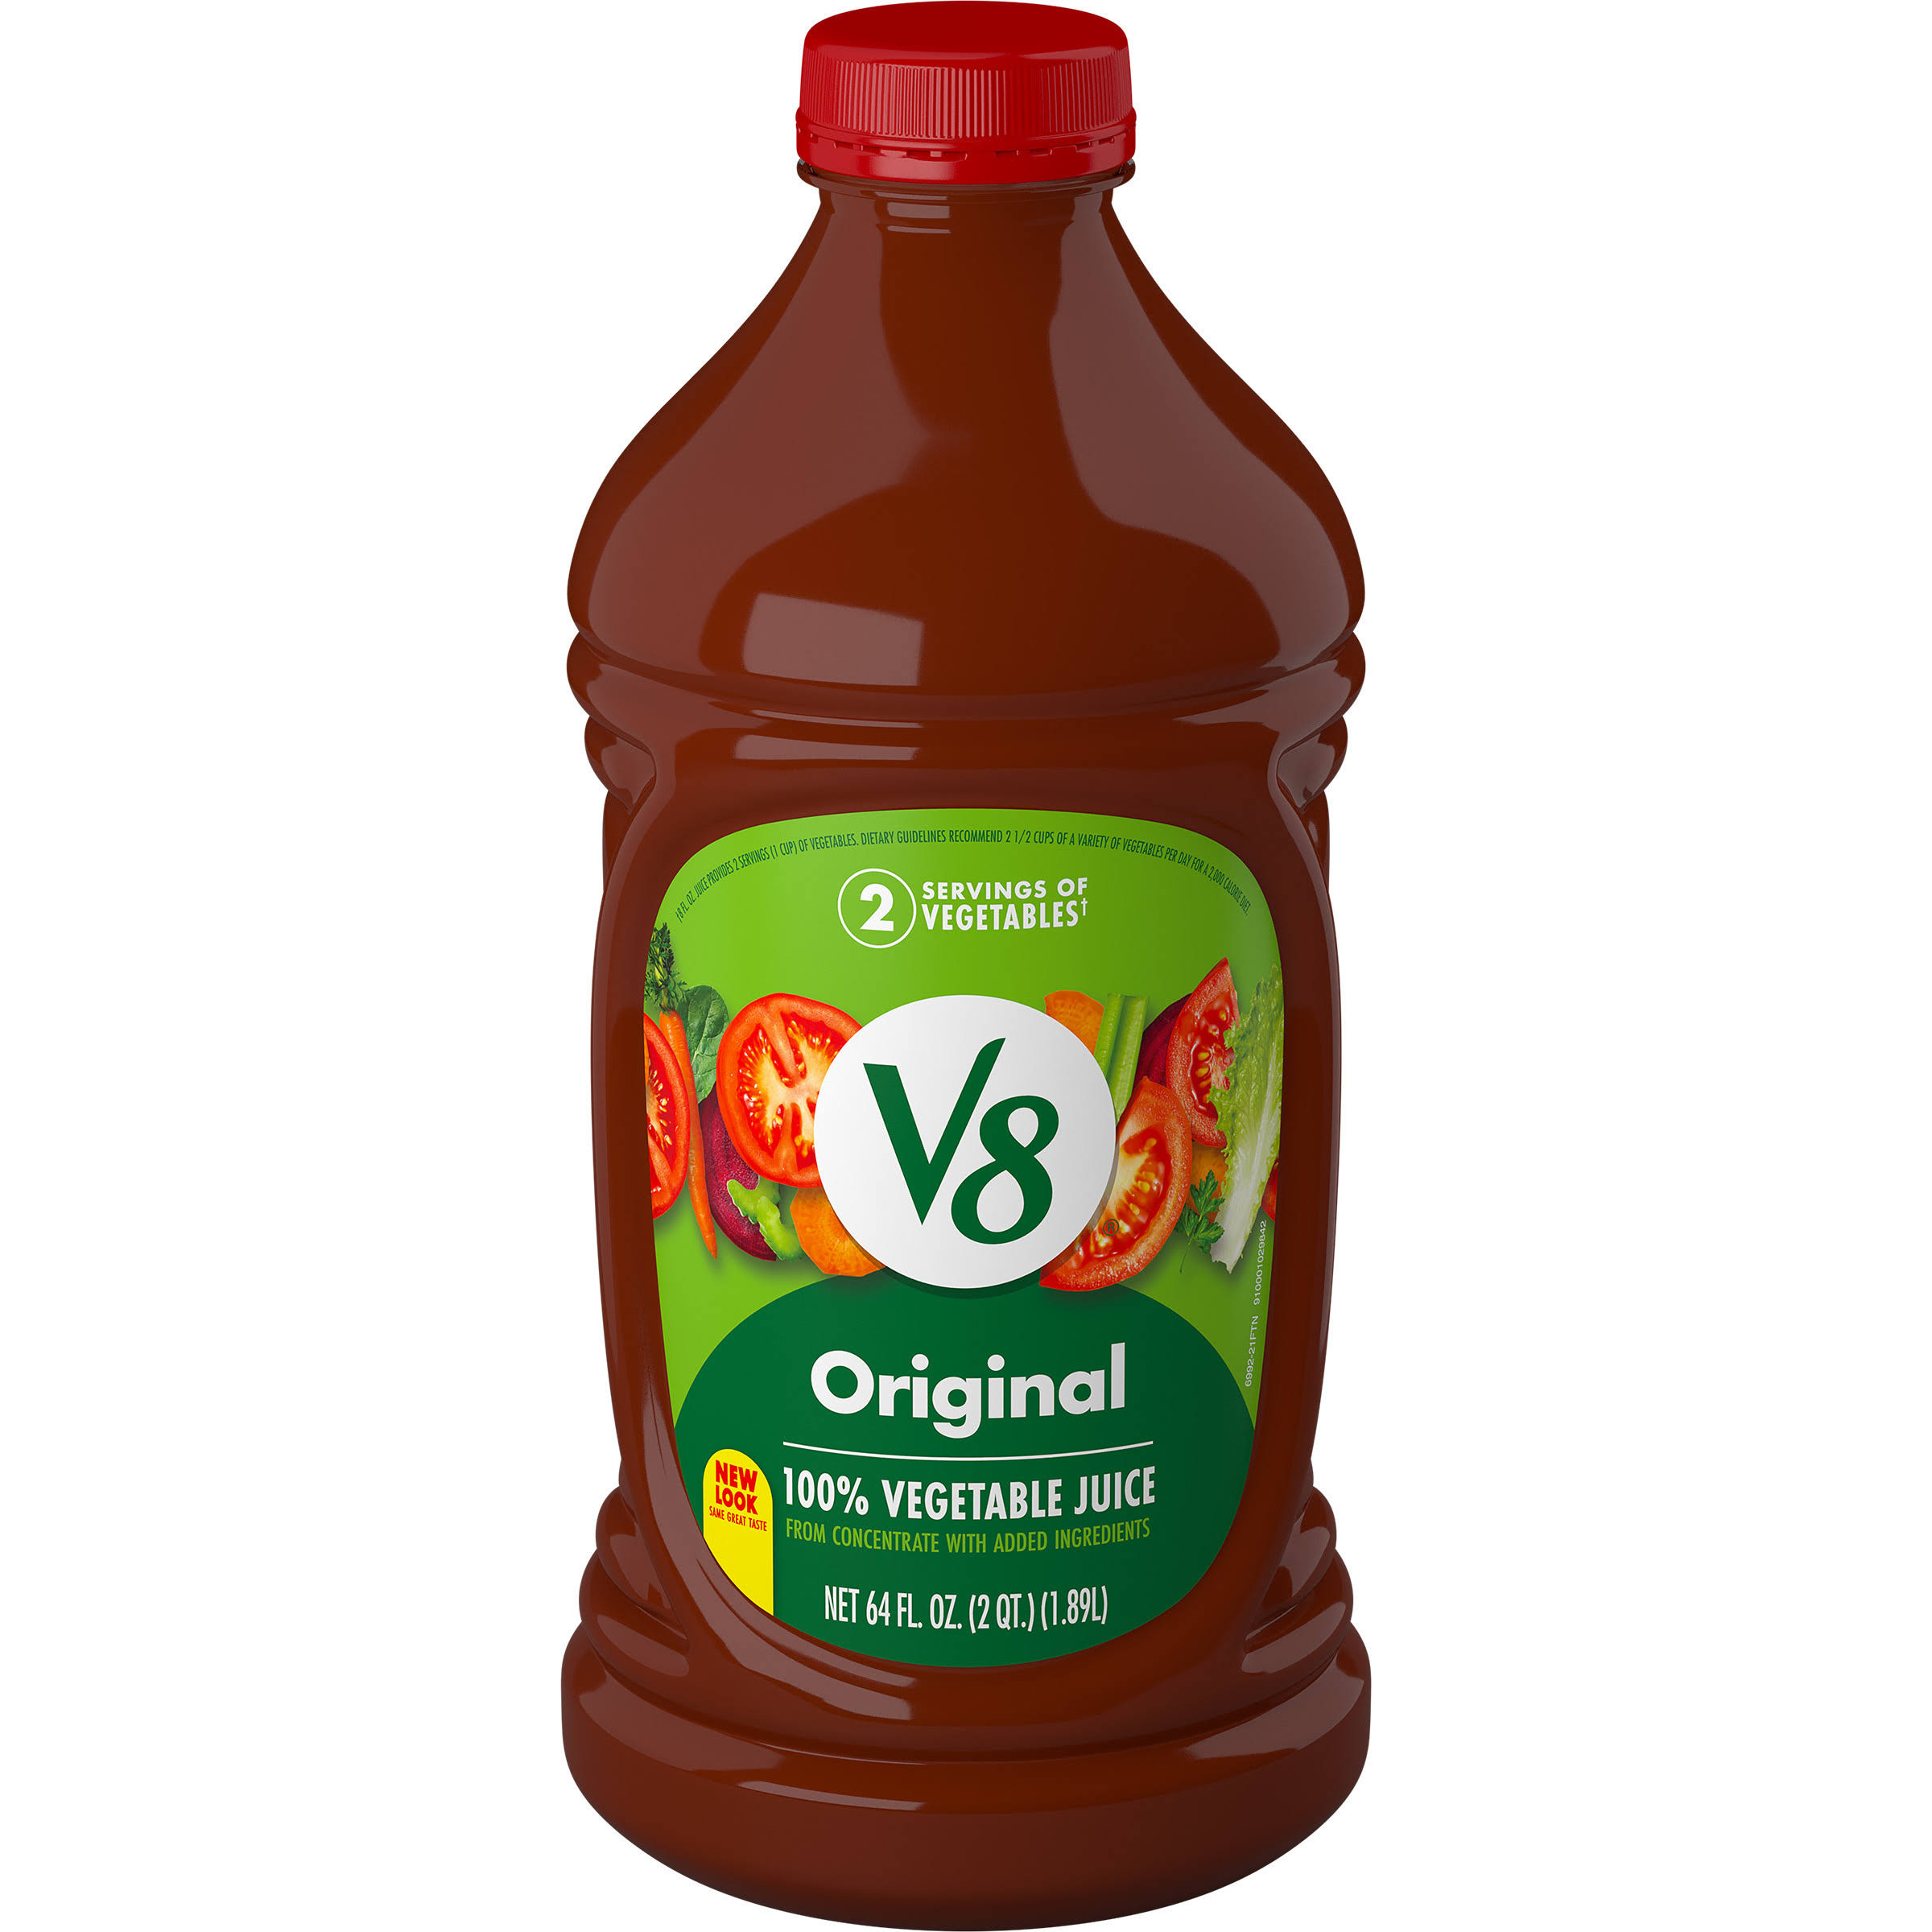 V8 Original 100% Vegetable Juice - 64oz